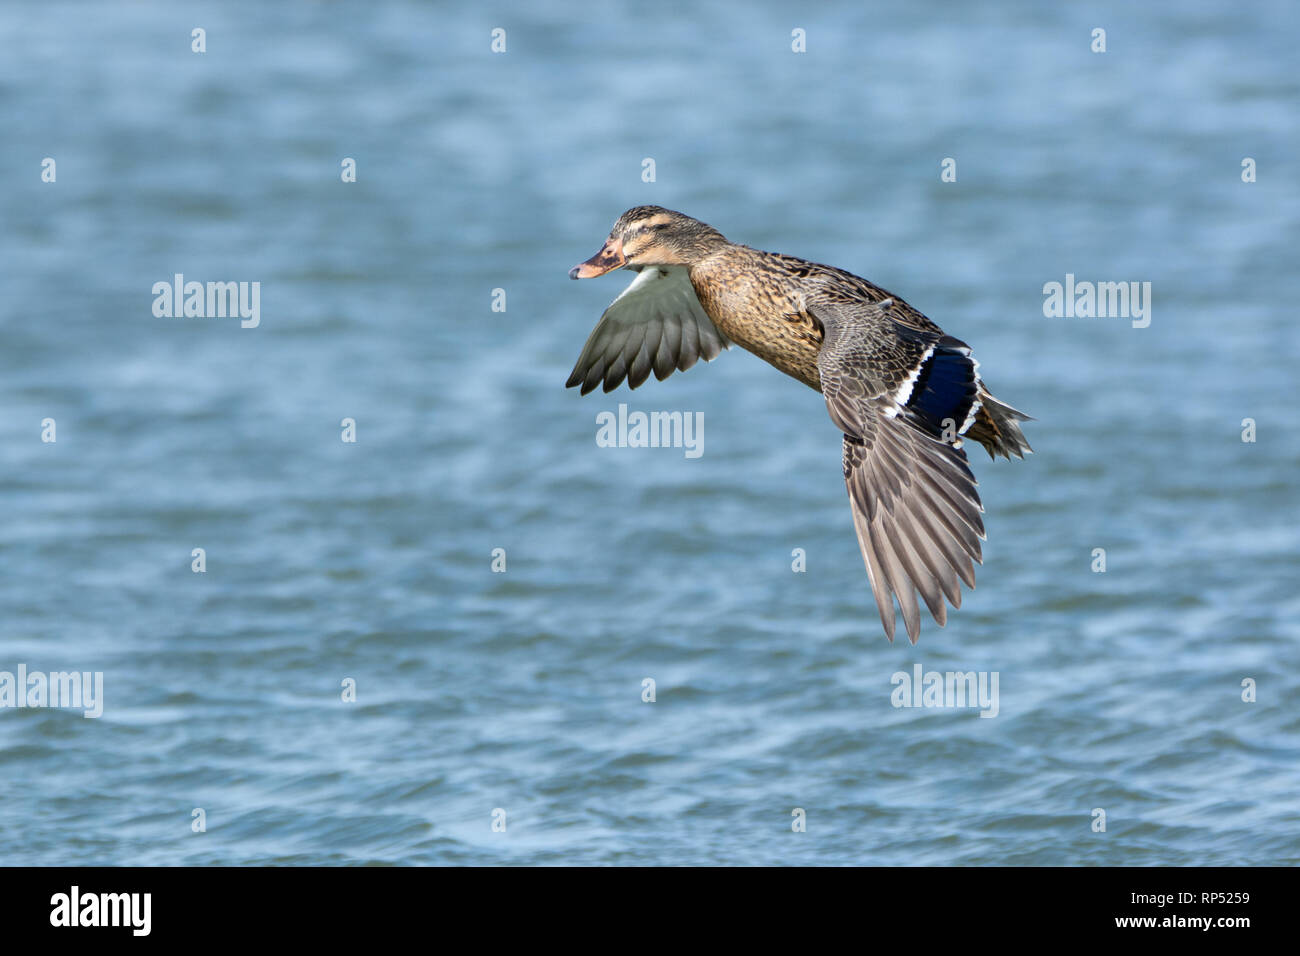 Female Mallard duck, missing an eye, in flight Stock Photo